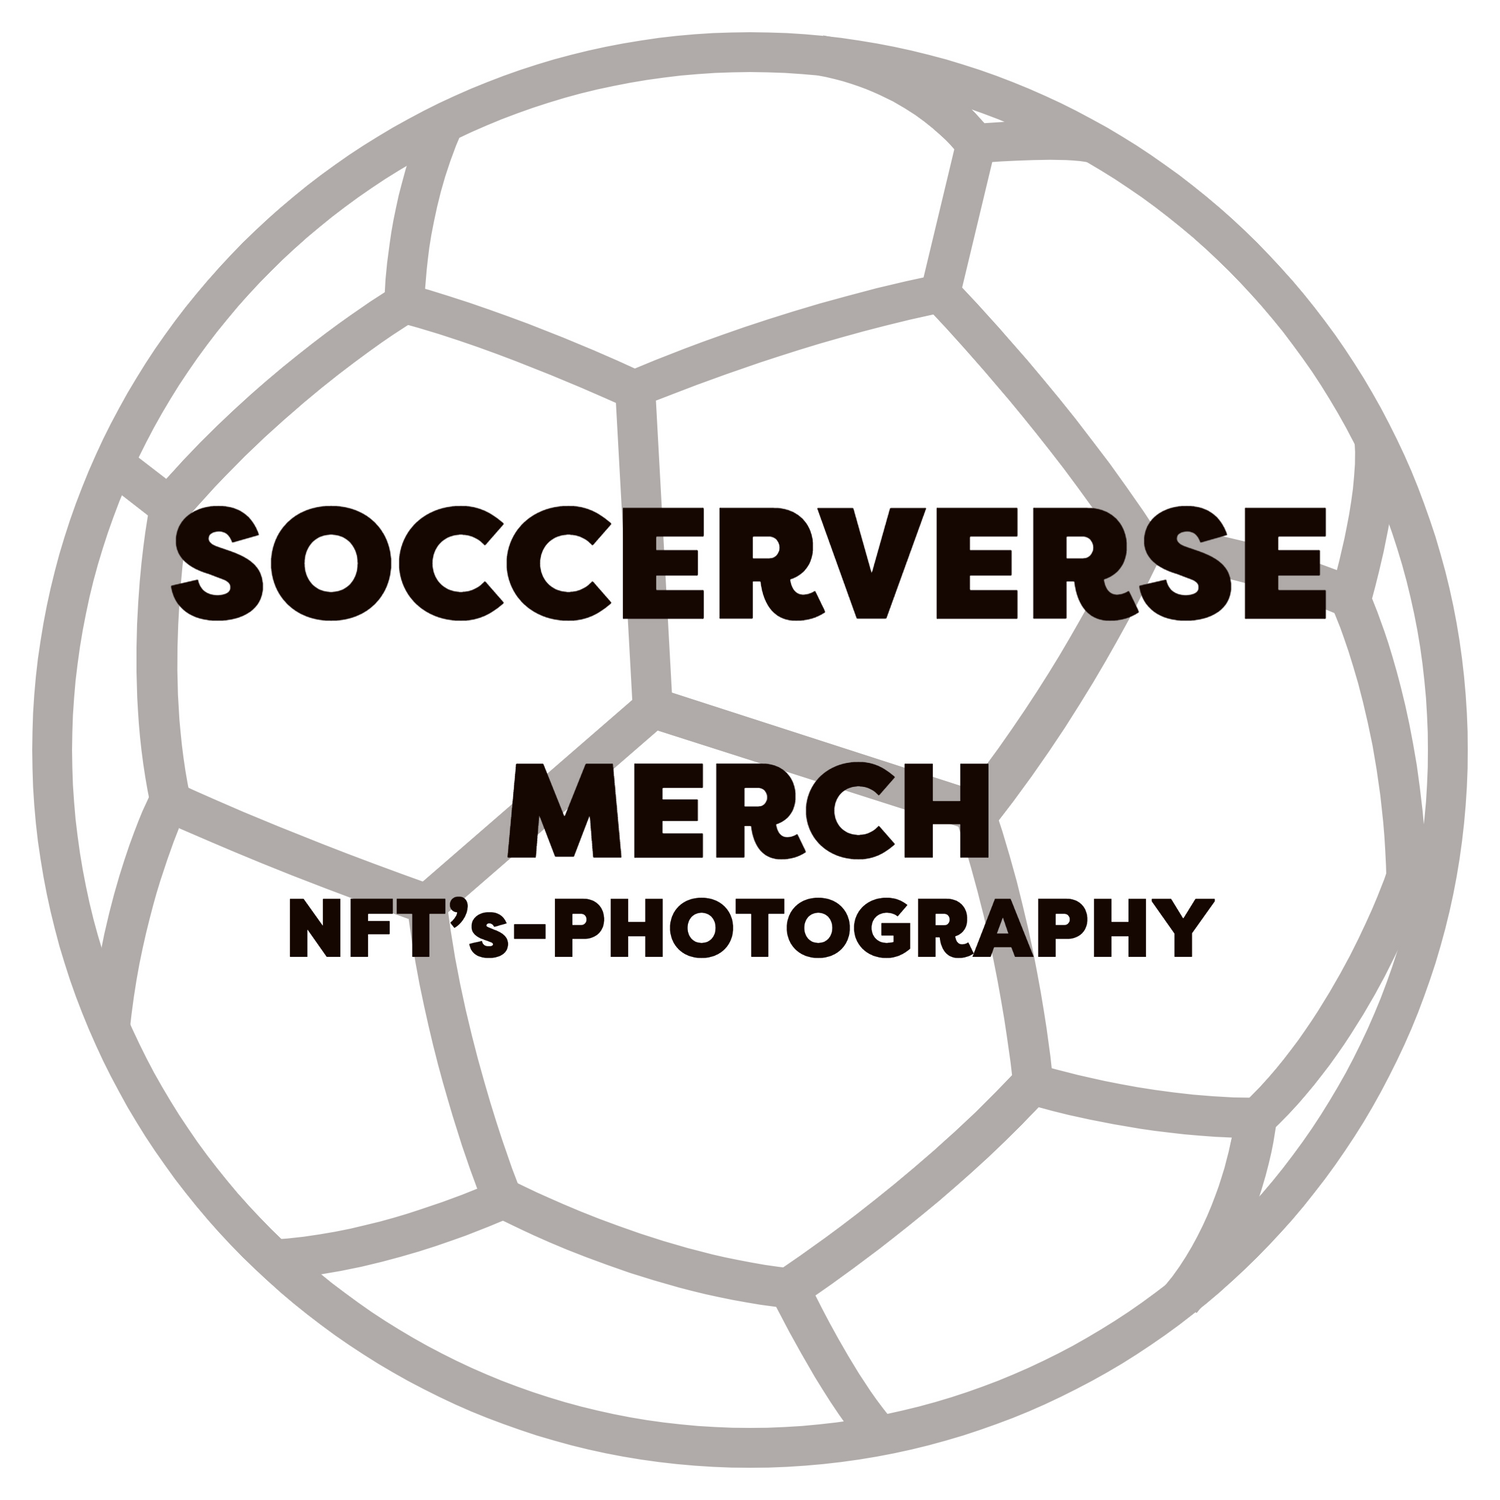 Soccerverse